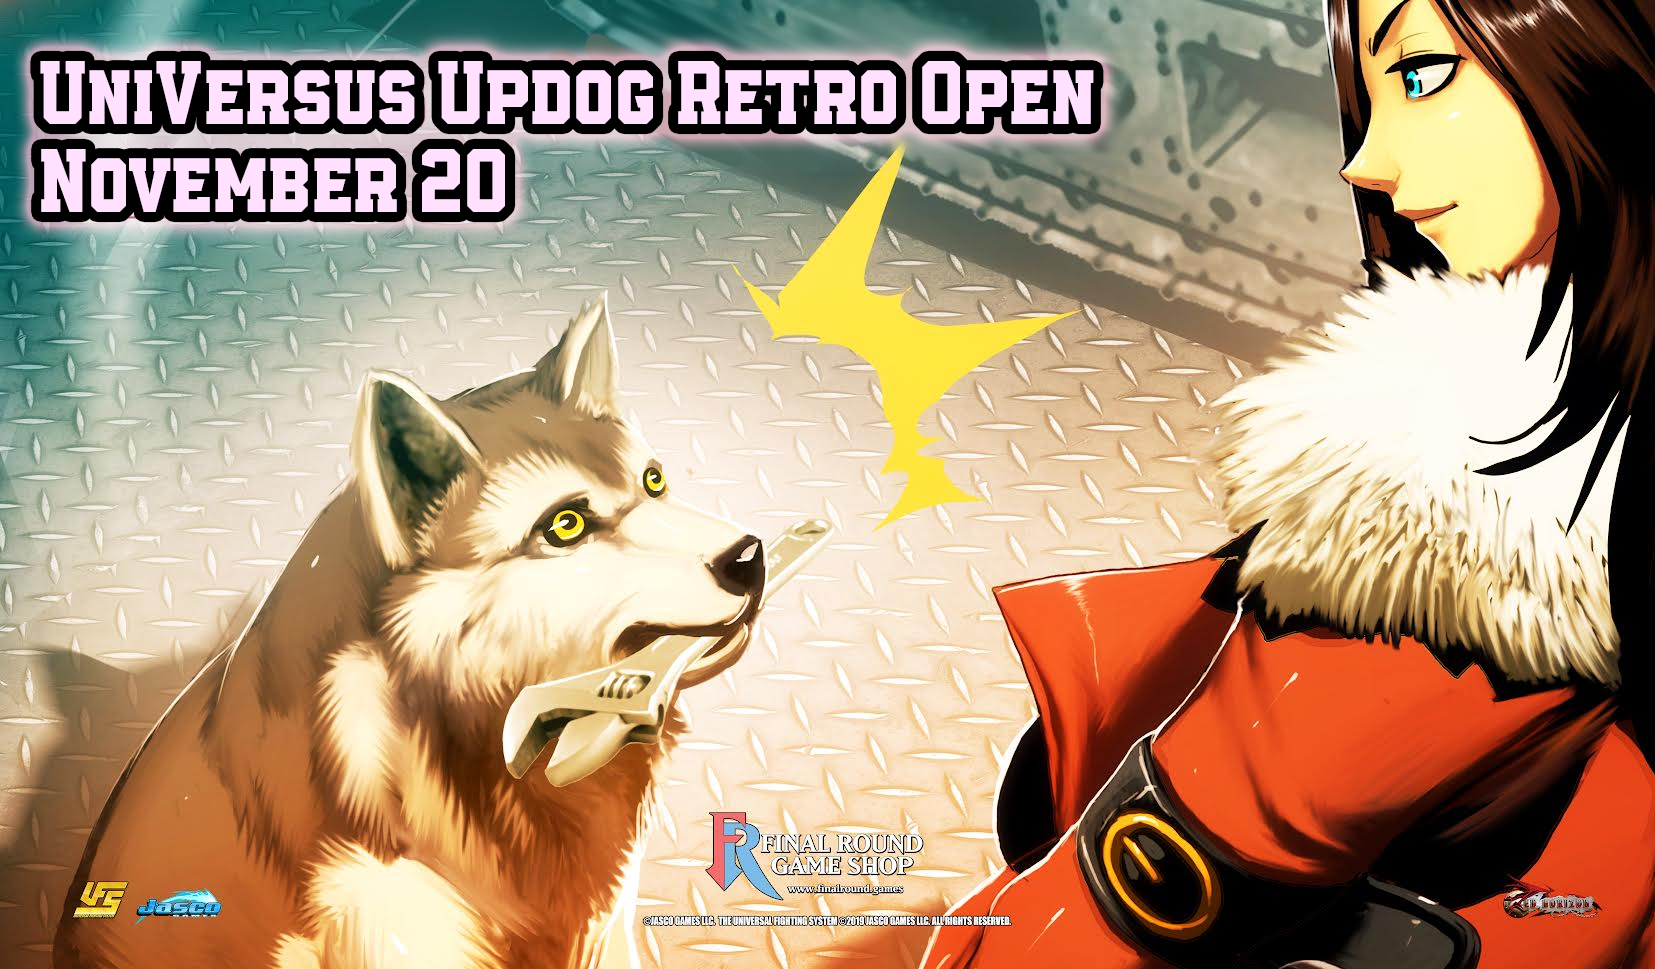 UniVersus Updog Retro Open!